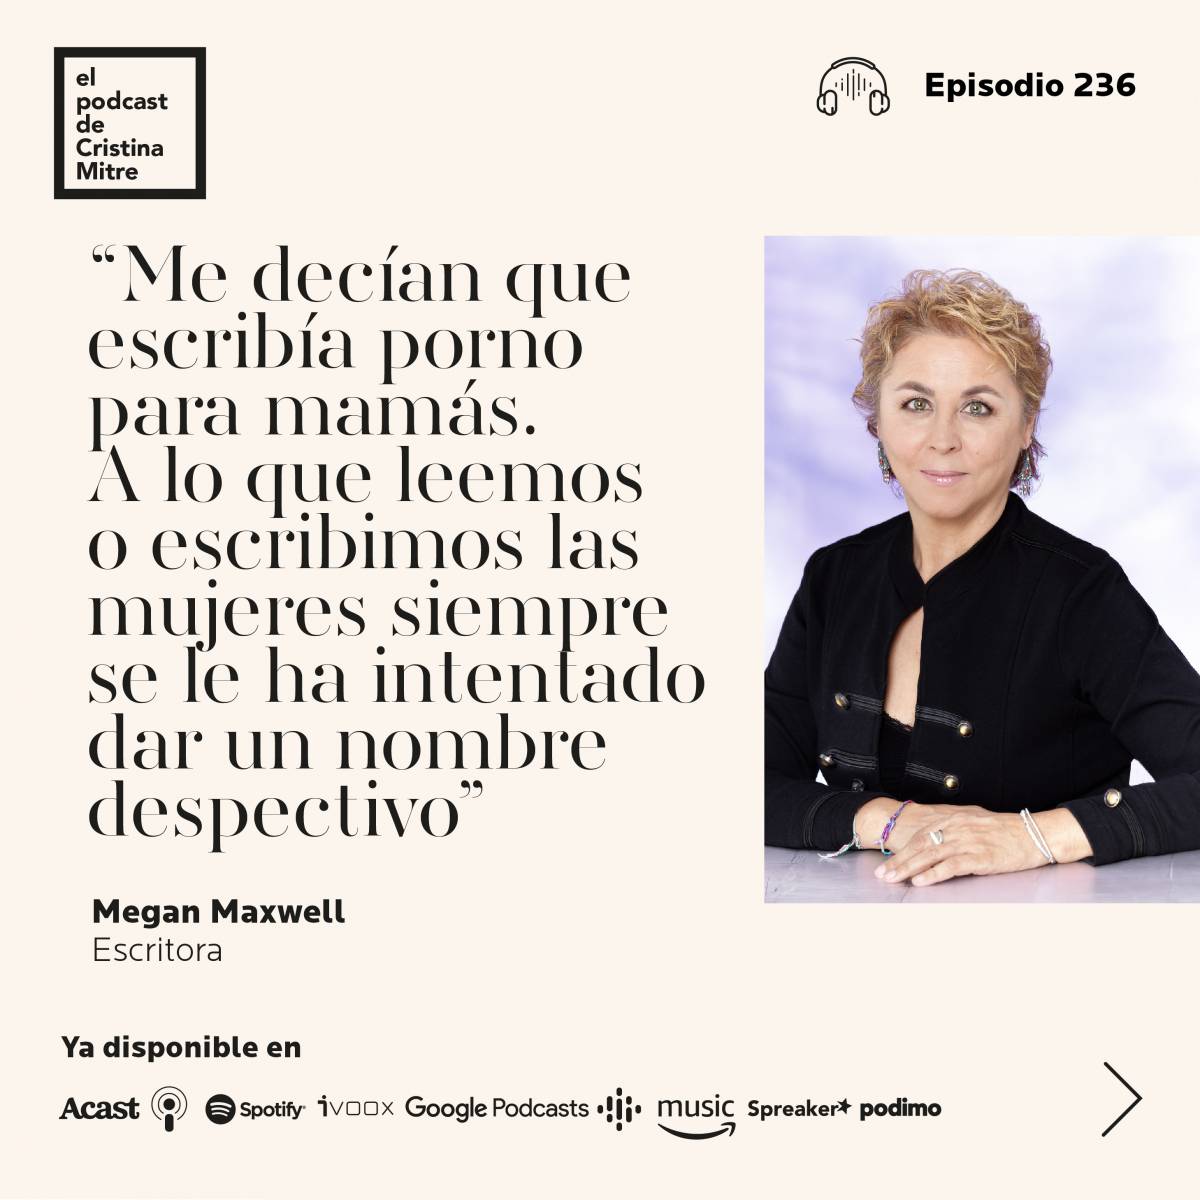 El podcast de Cristina Mitre Megan Maxwell